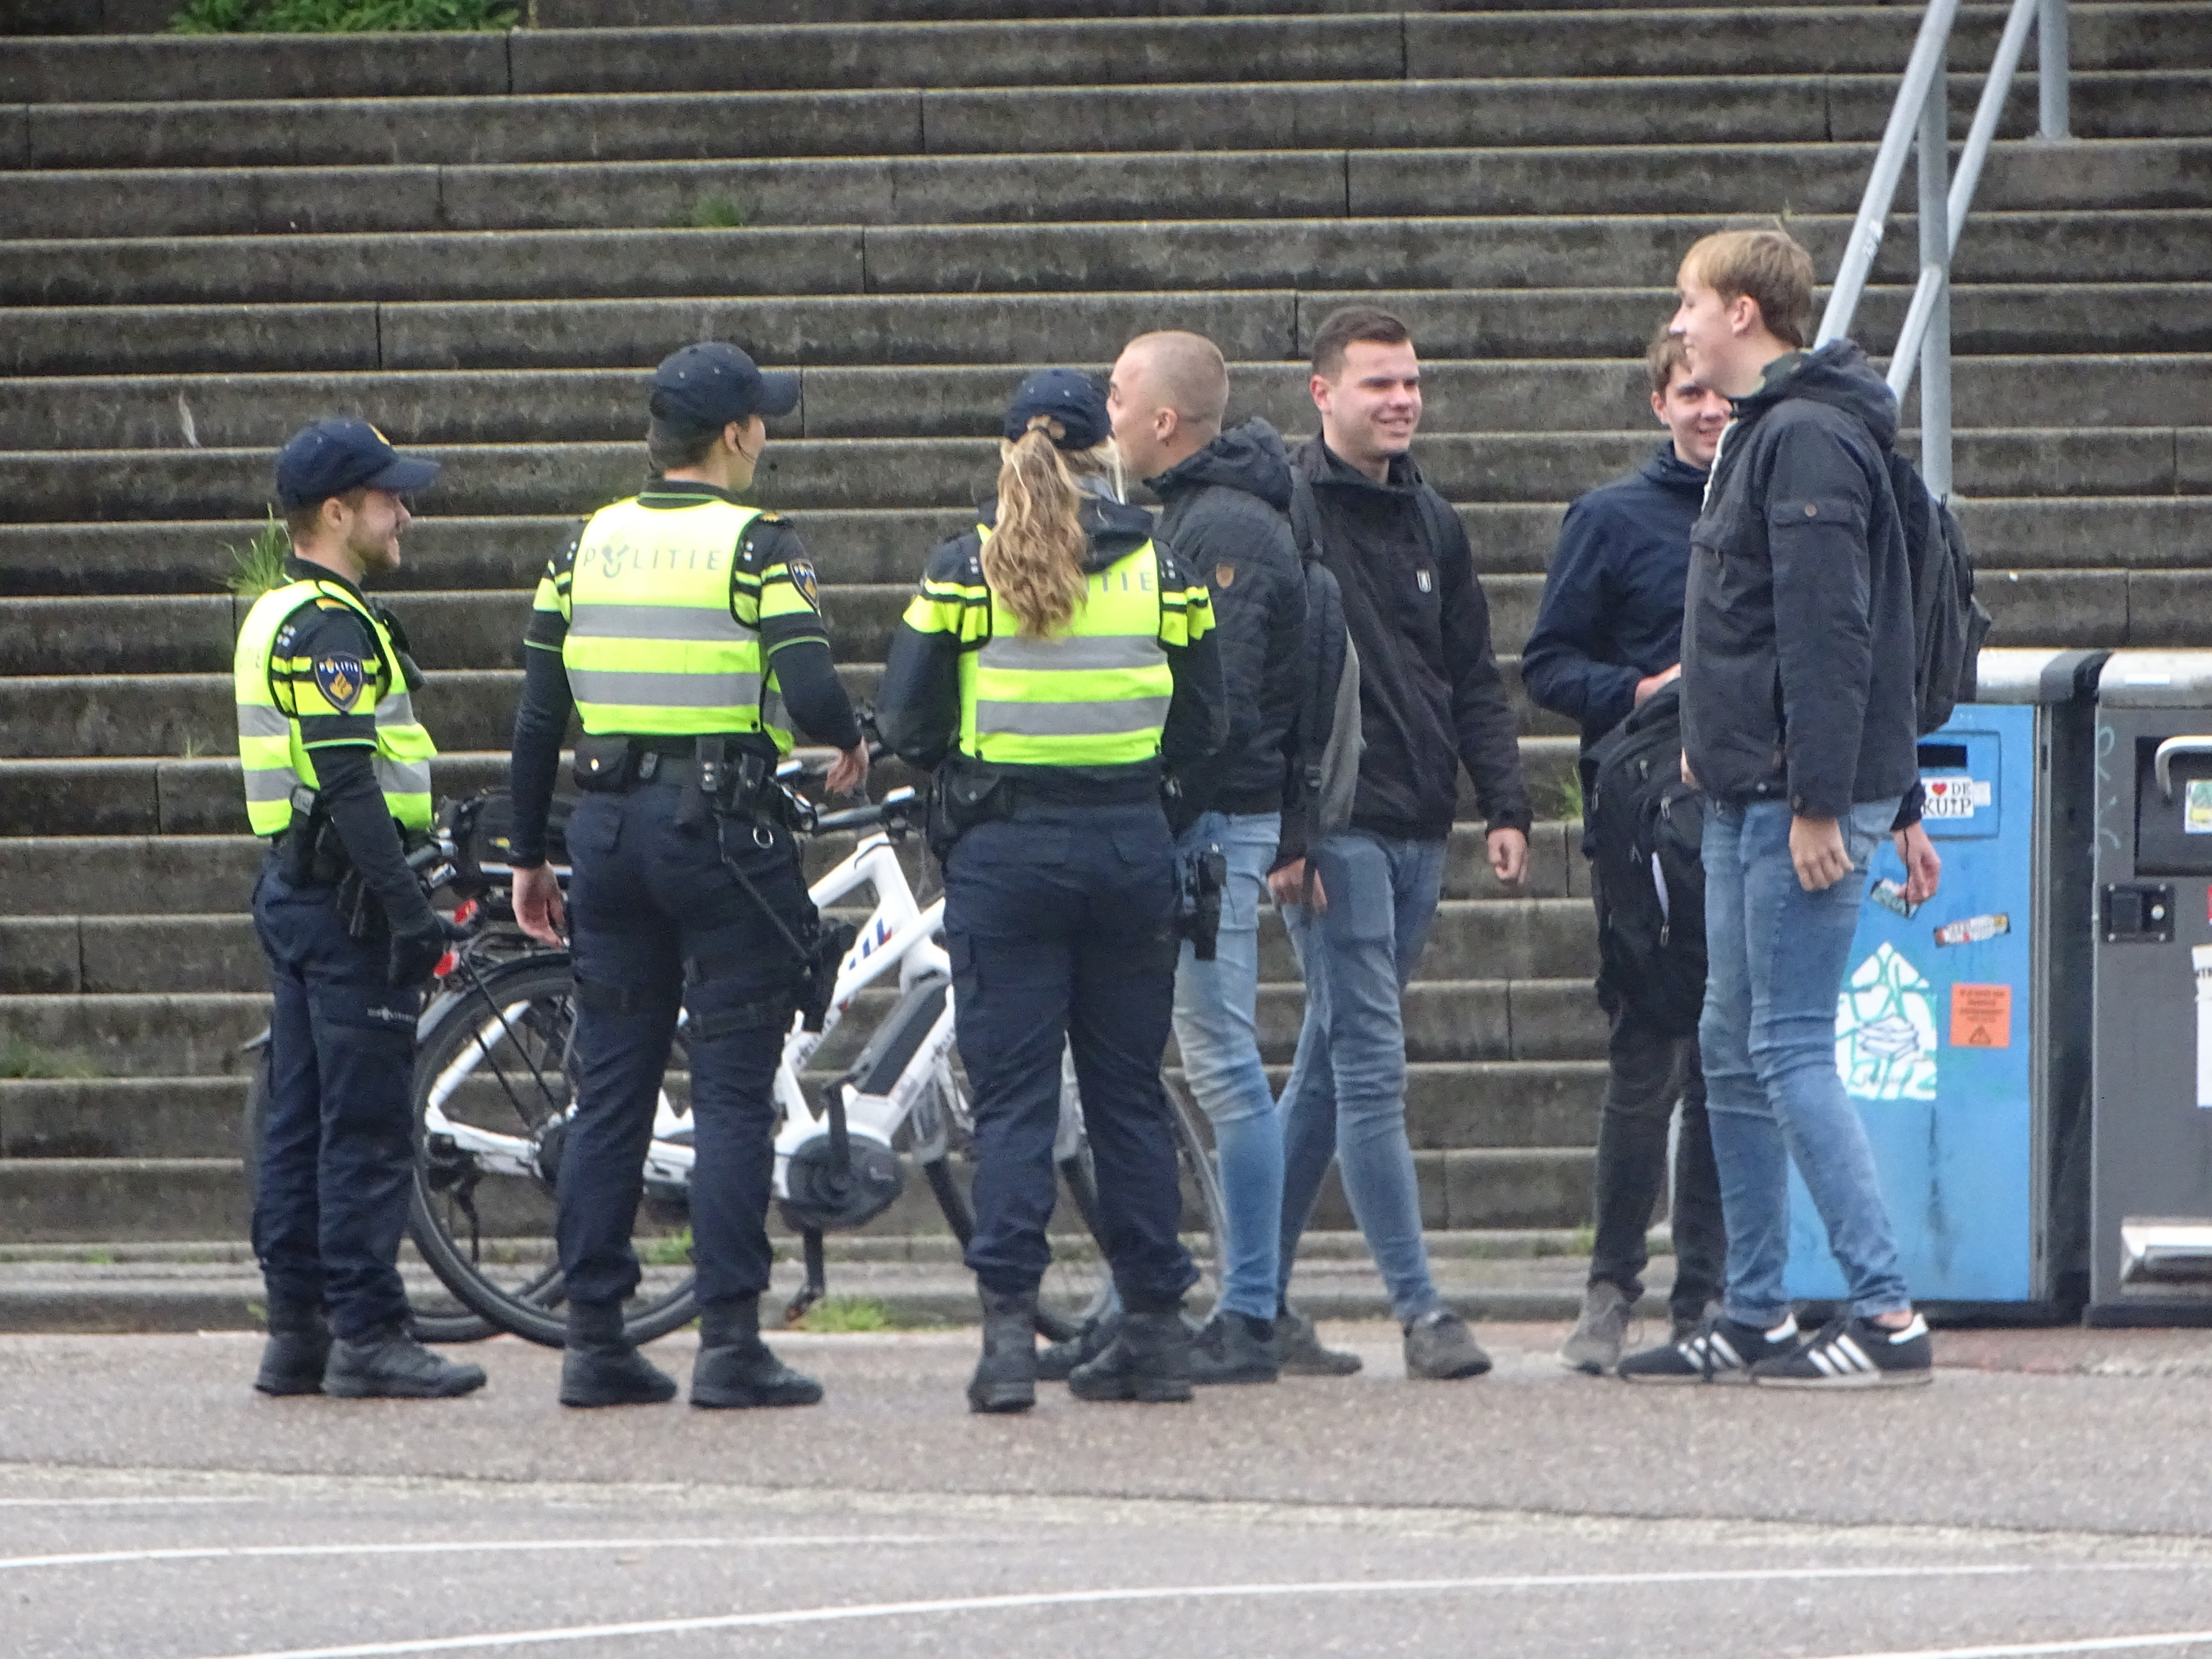 Politie houdt supporters staande bij tramhalte stadion voor controle